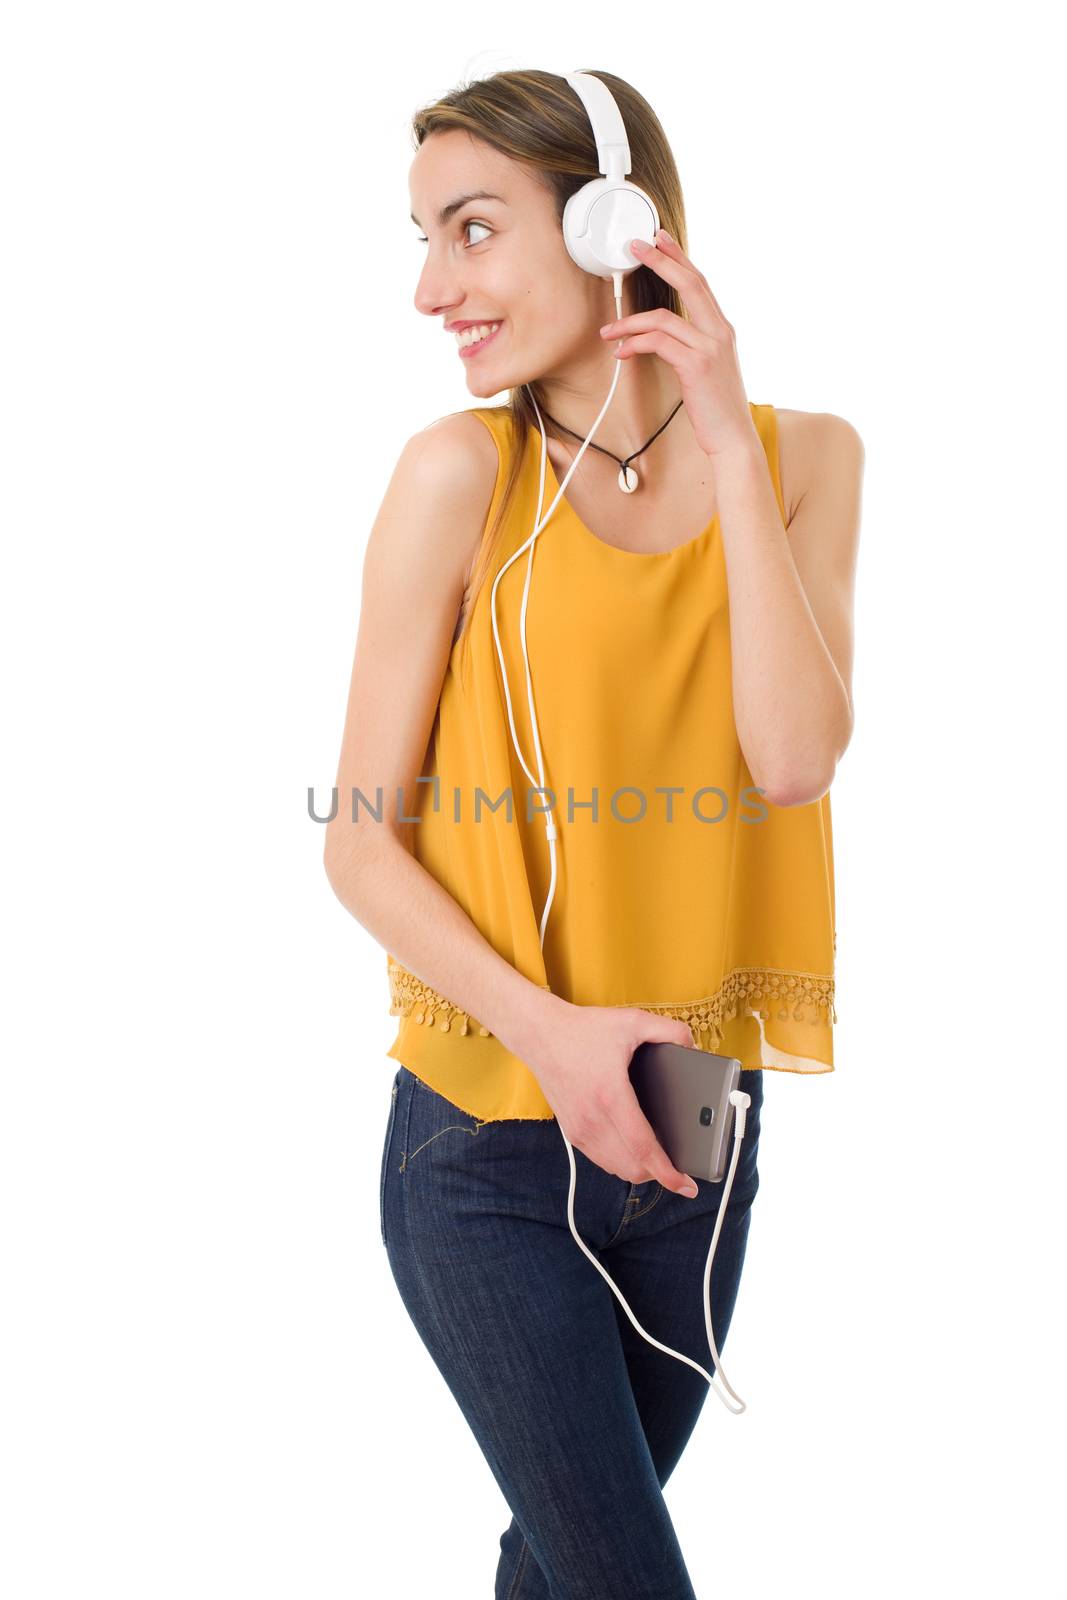 woman listen music by zittto